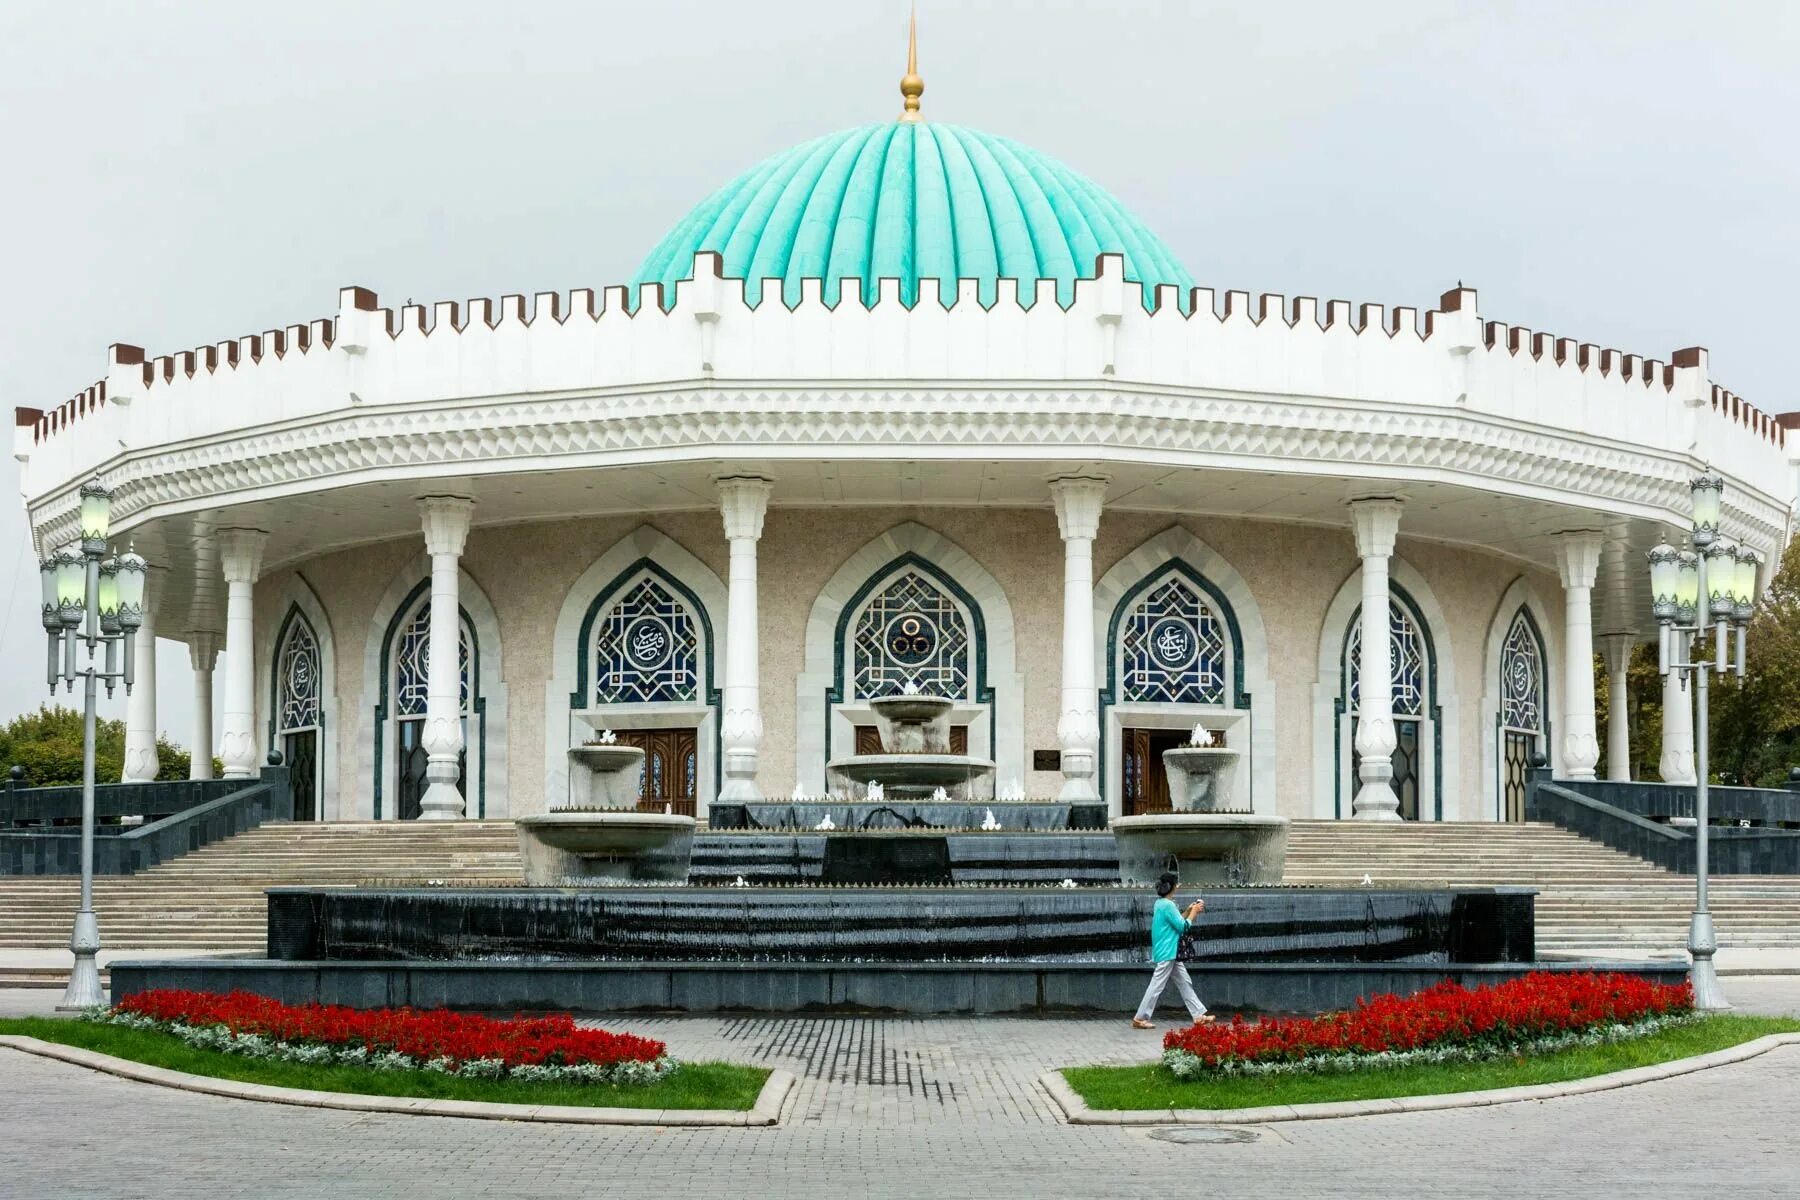 Ташкент столица Узбекистана. Узбекистан Ташкент достопримечательности. Гор Ташкент Республики Узбекистан. Узбекистан столица Ташкент достопримечательности.